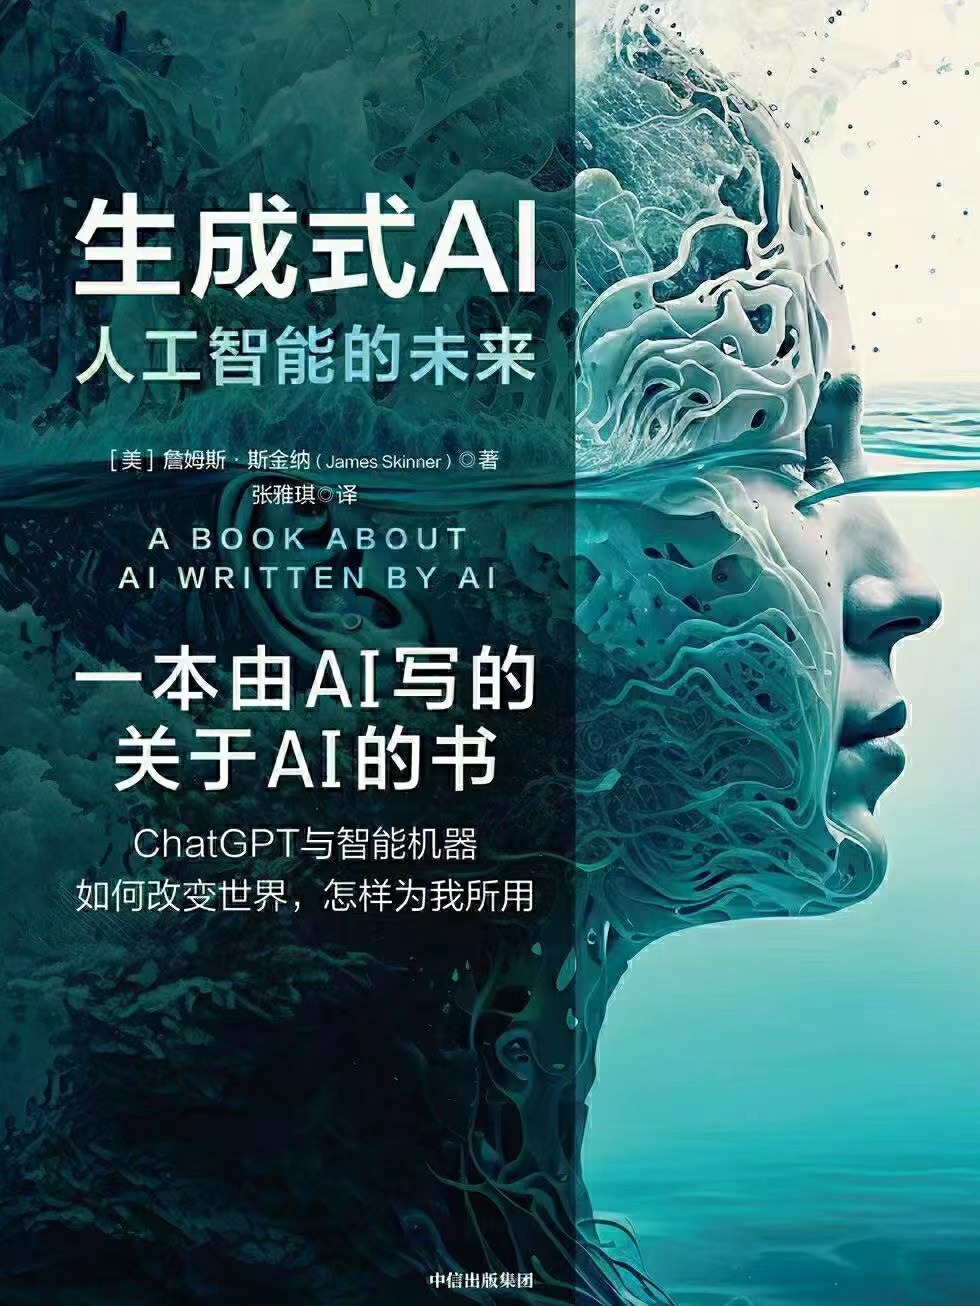 【电子书上新】 ★《生成式AI》 ~由人工智能创作的关于人工智能的普及读物